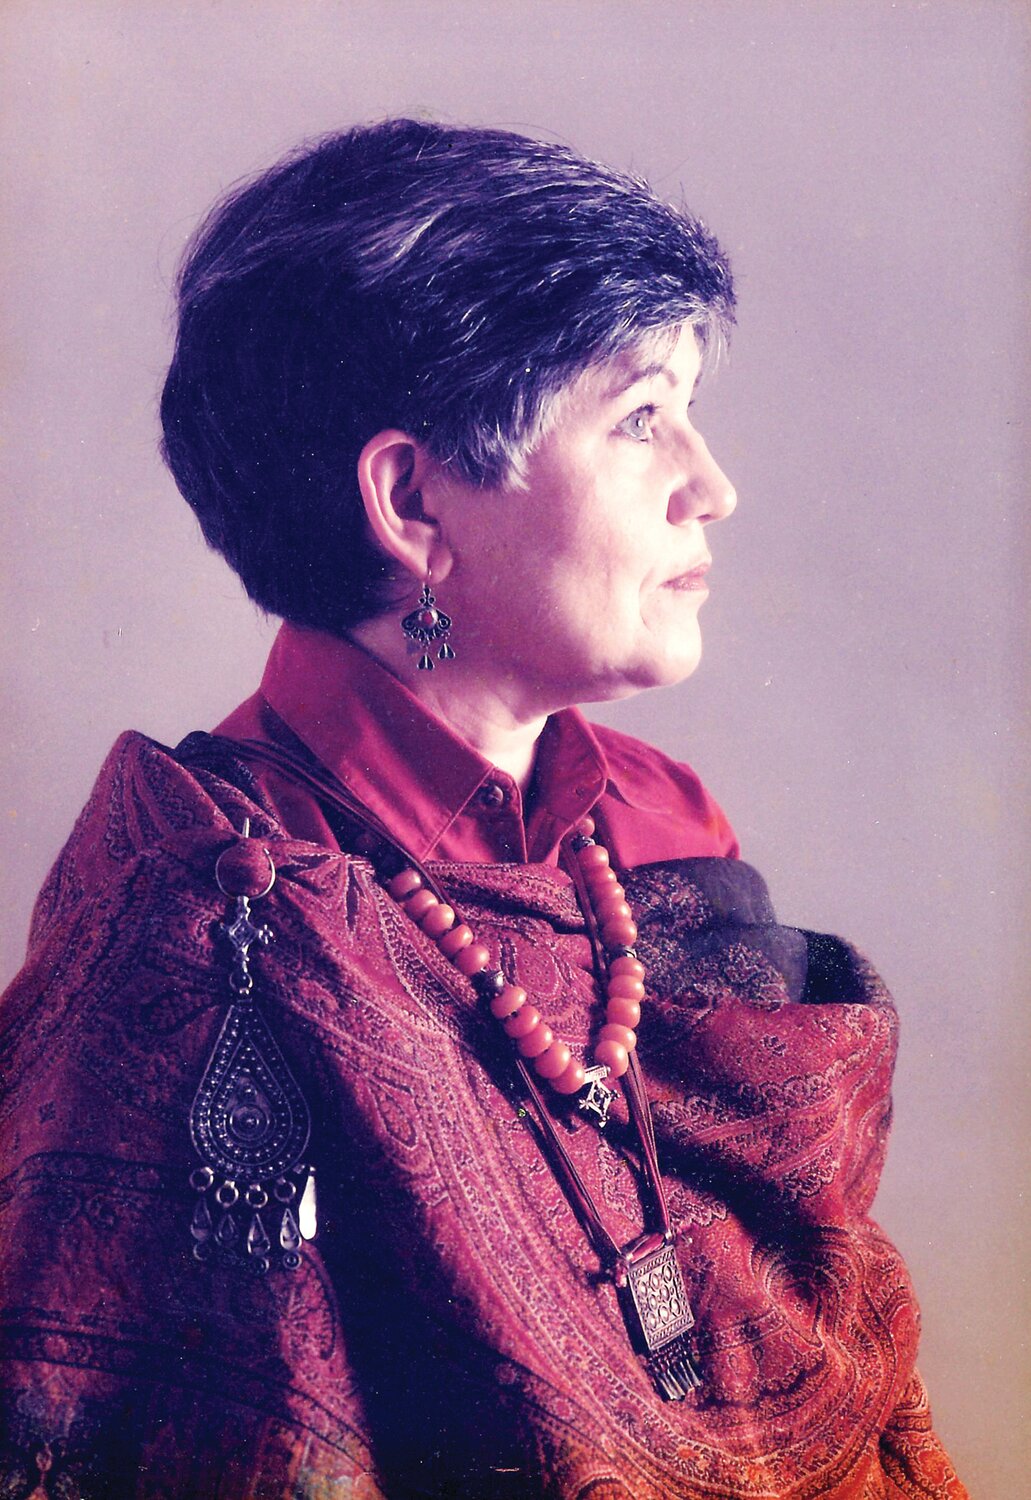 Doris Jane Van Natta